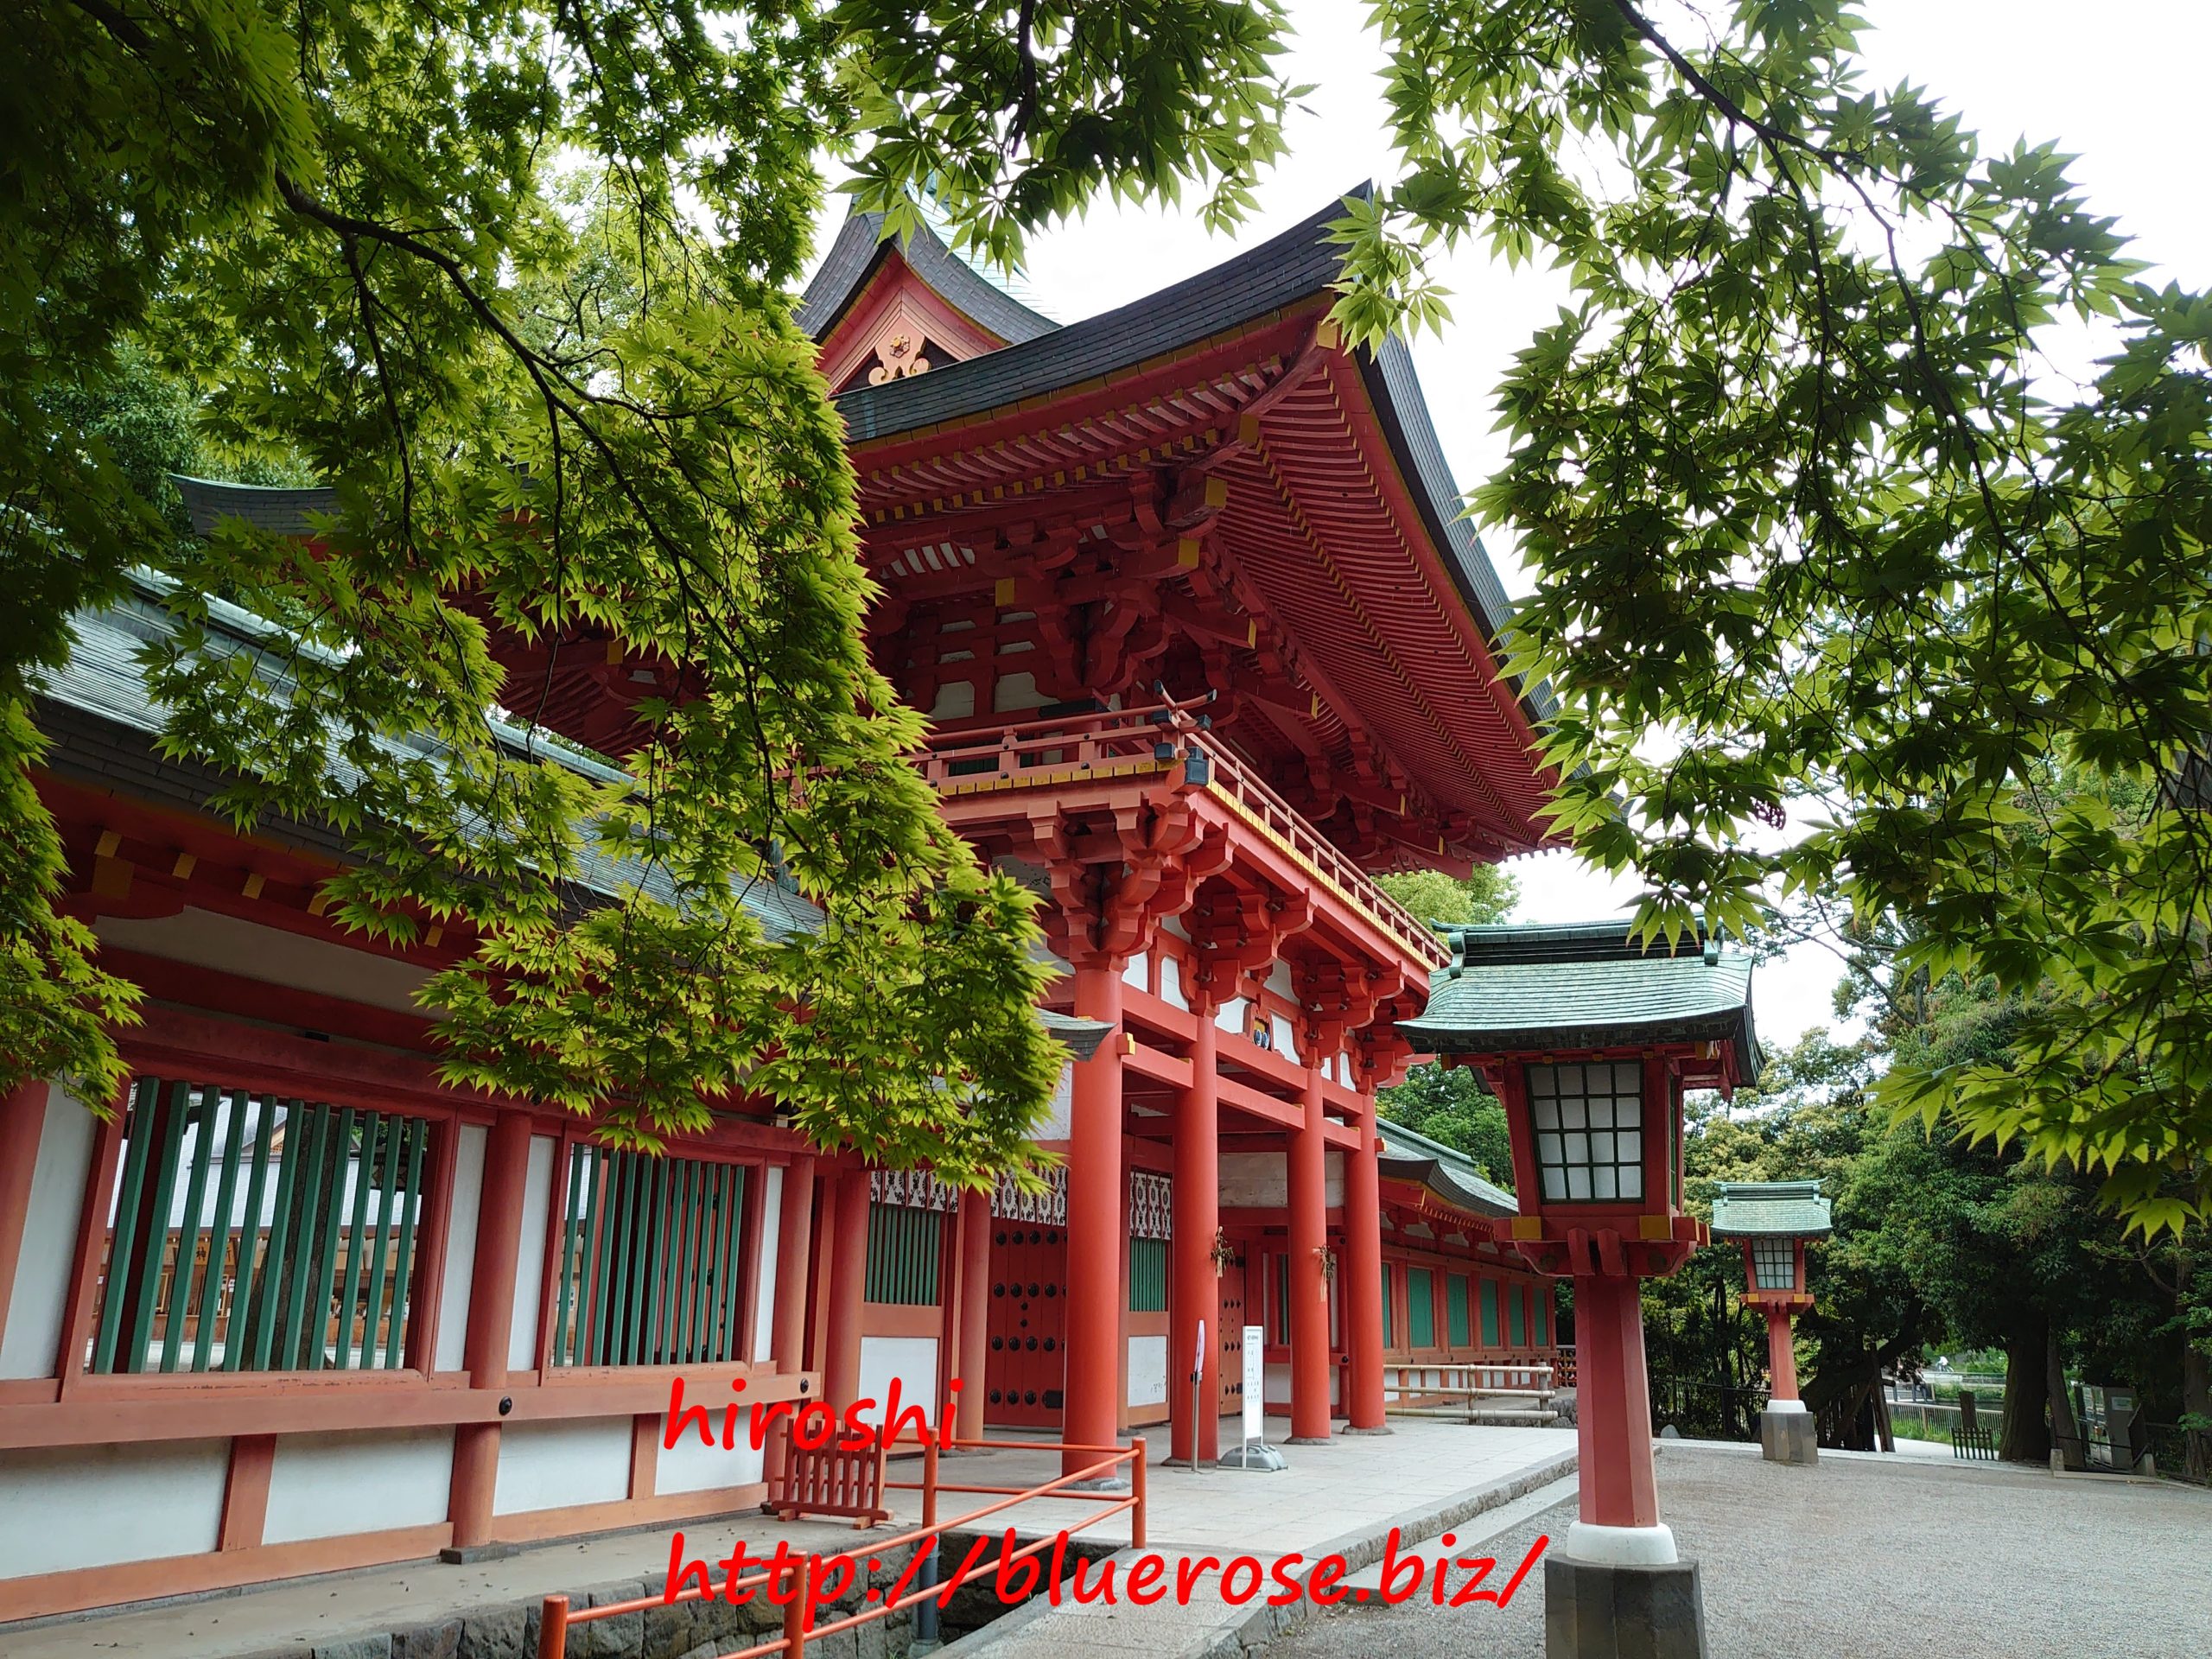 大宮氷川神社の御朱印21 限定夏バージョンや蛇の池など紹介 情報発信ブログサイト Blue Rose